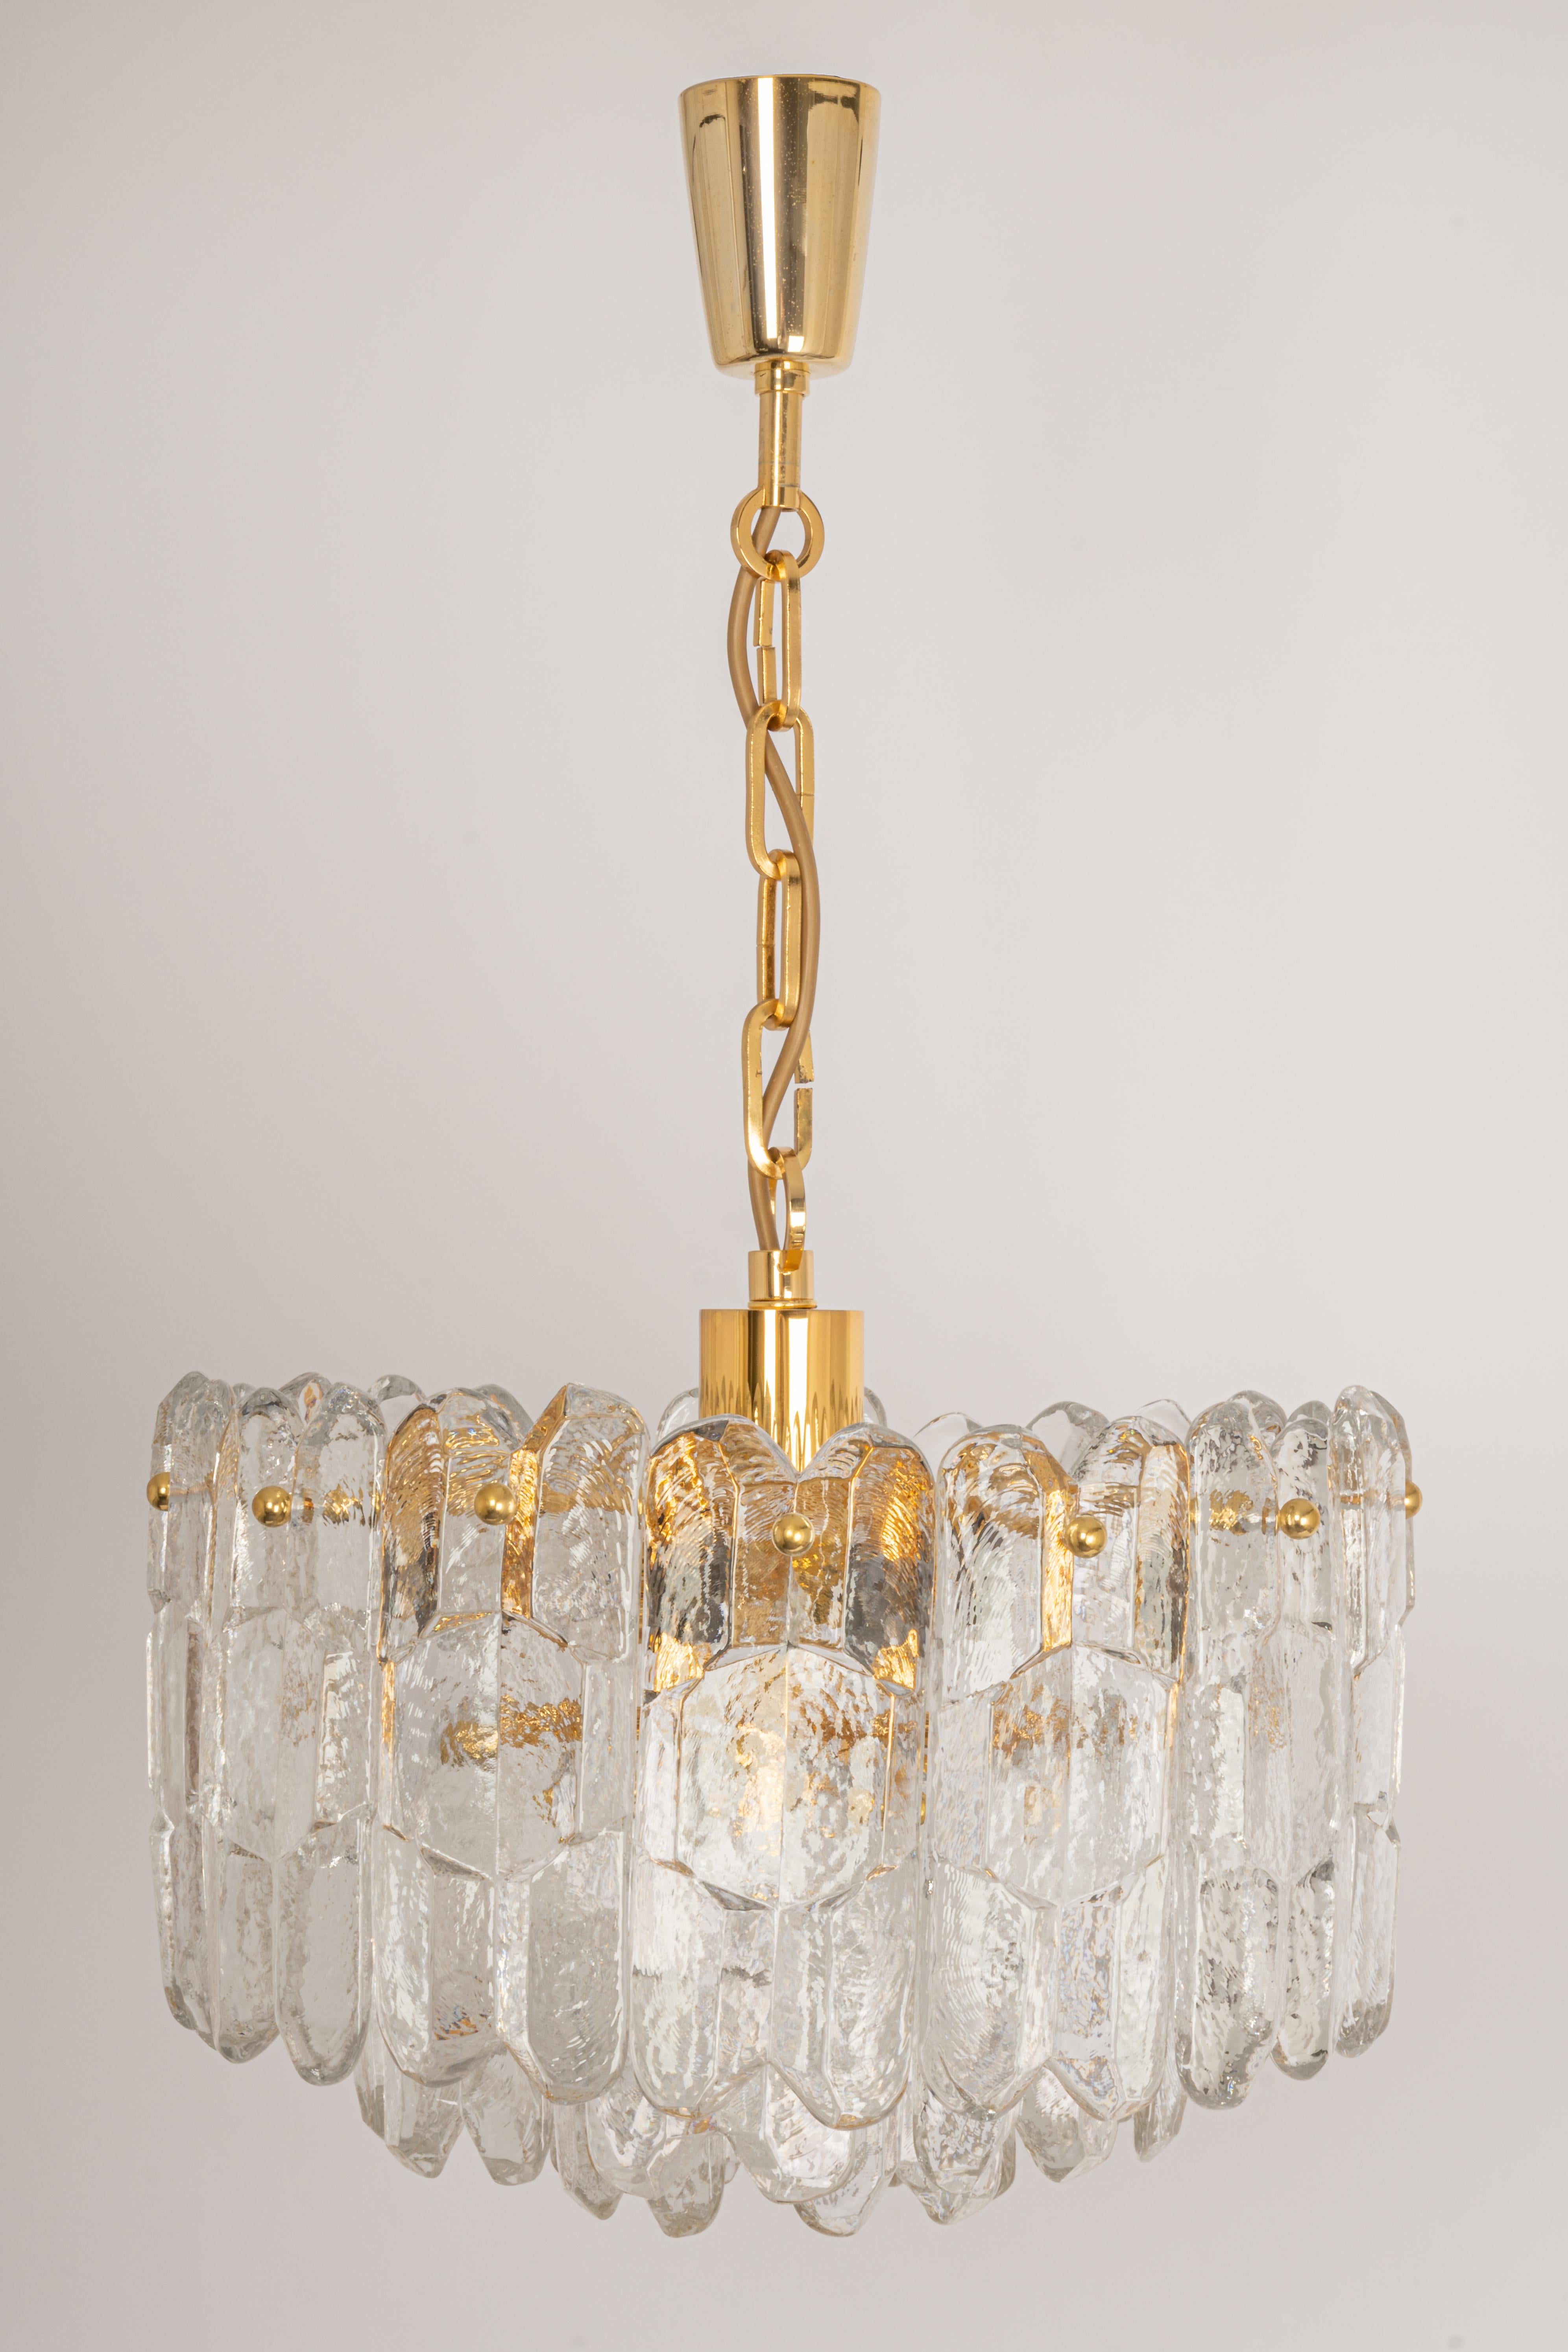 Eine wunderschöne Leuchte aus vergoldetem Messing von Kalmar (Serie: Palazzo), Österreich, hergestellt ca. 1970-1979.
Drei Etagen Struktur sammeln viele strukturierte Gläser, schön Brechung des Lichts sehr schwere Qualität.

Hochwertig und in